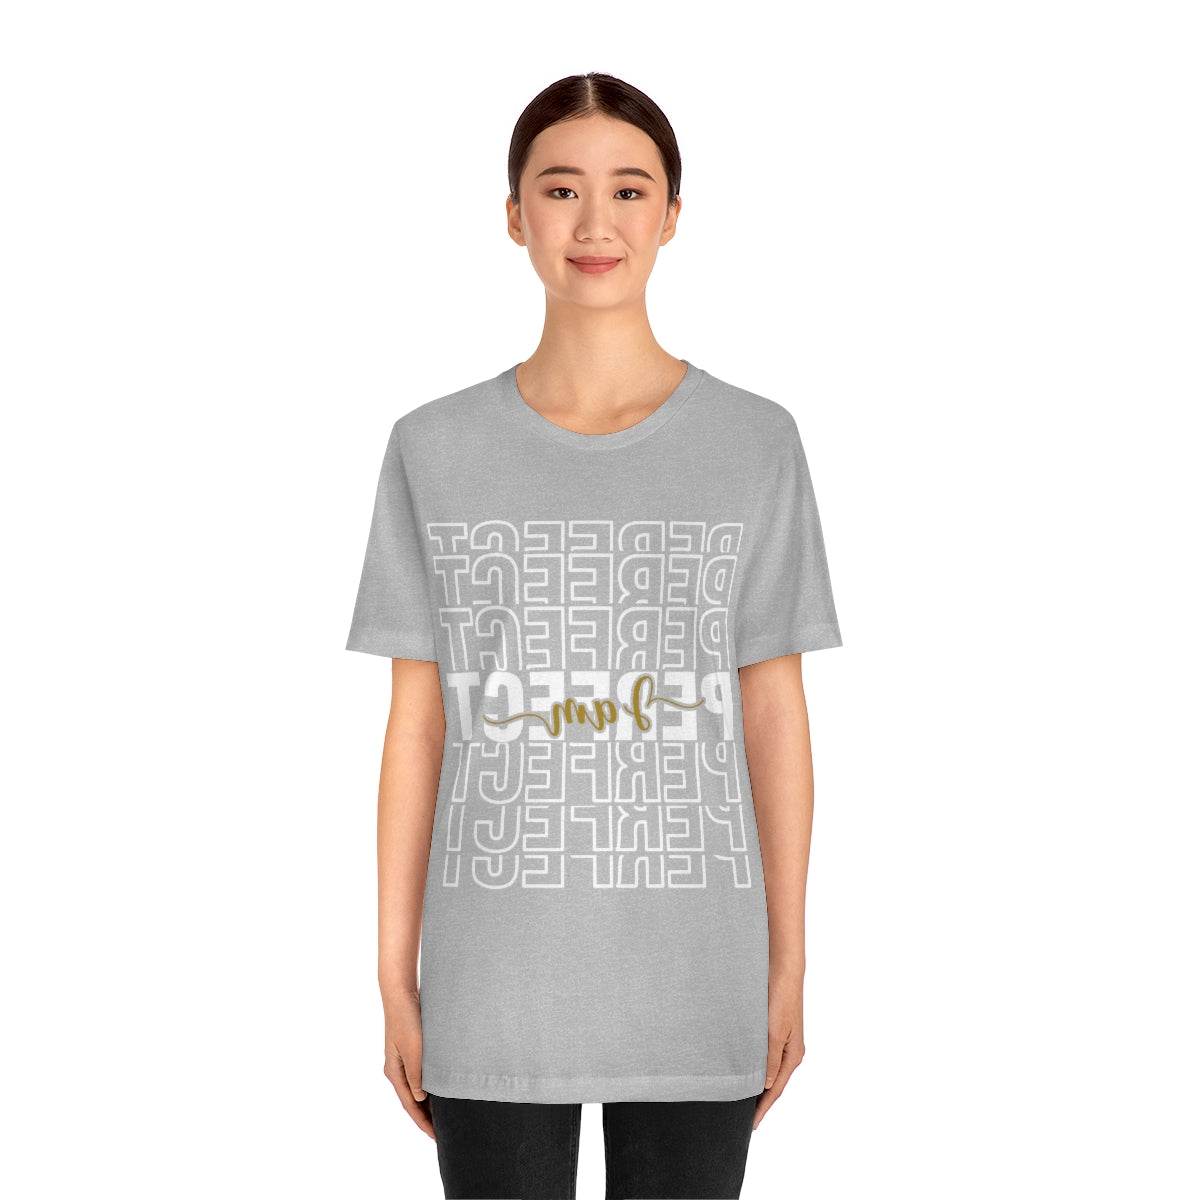 Affirmation Feminist Pro Choice T-Shirt Unisex Size, I am Perfect Shava Printify